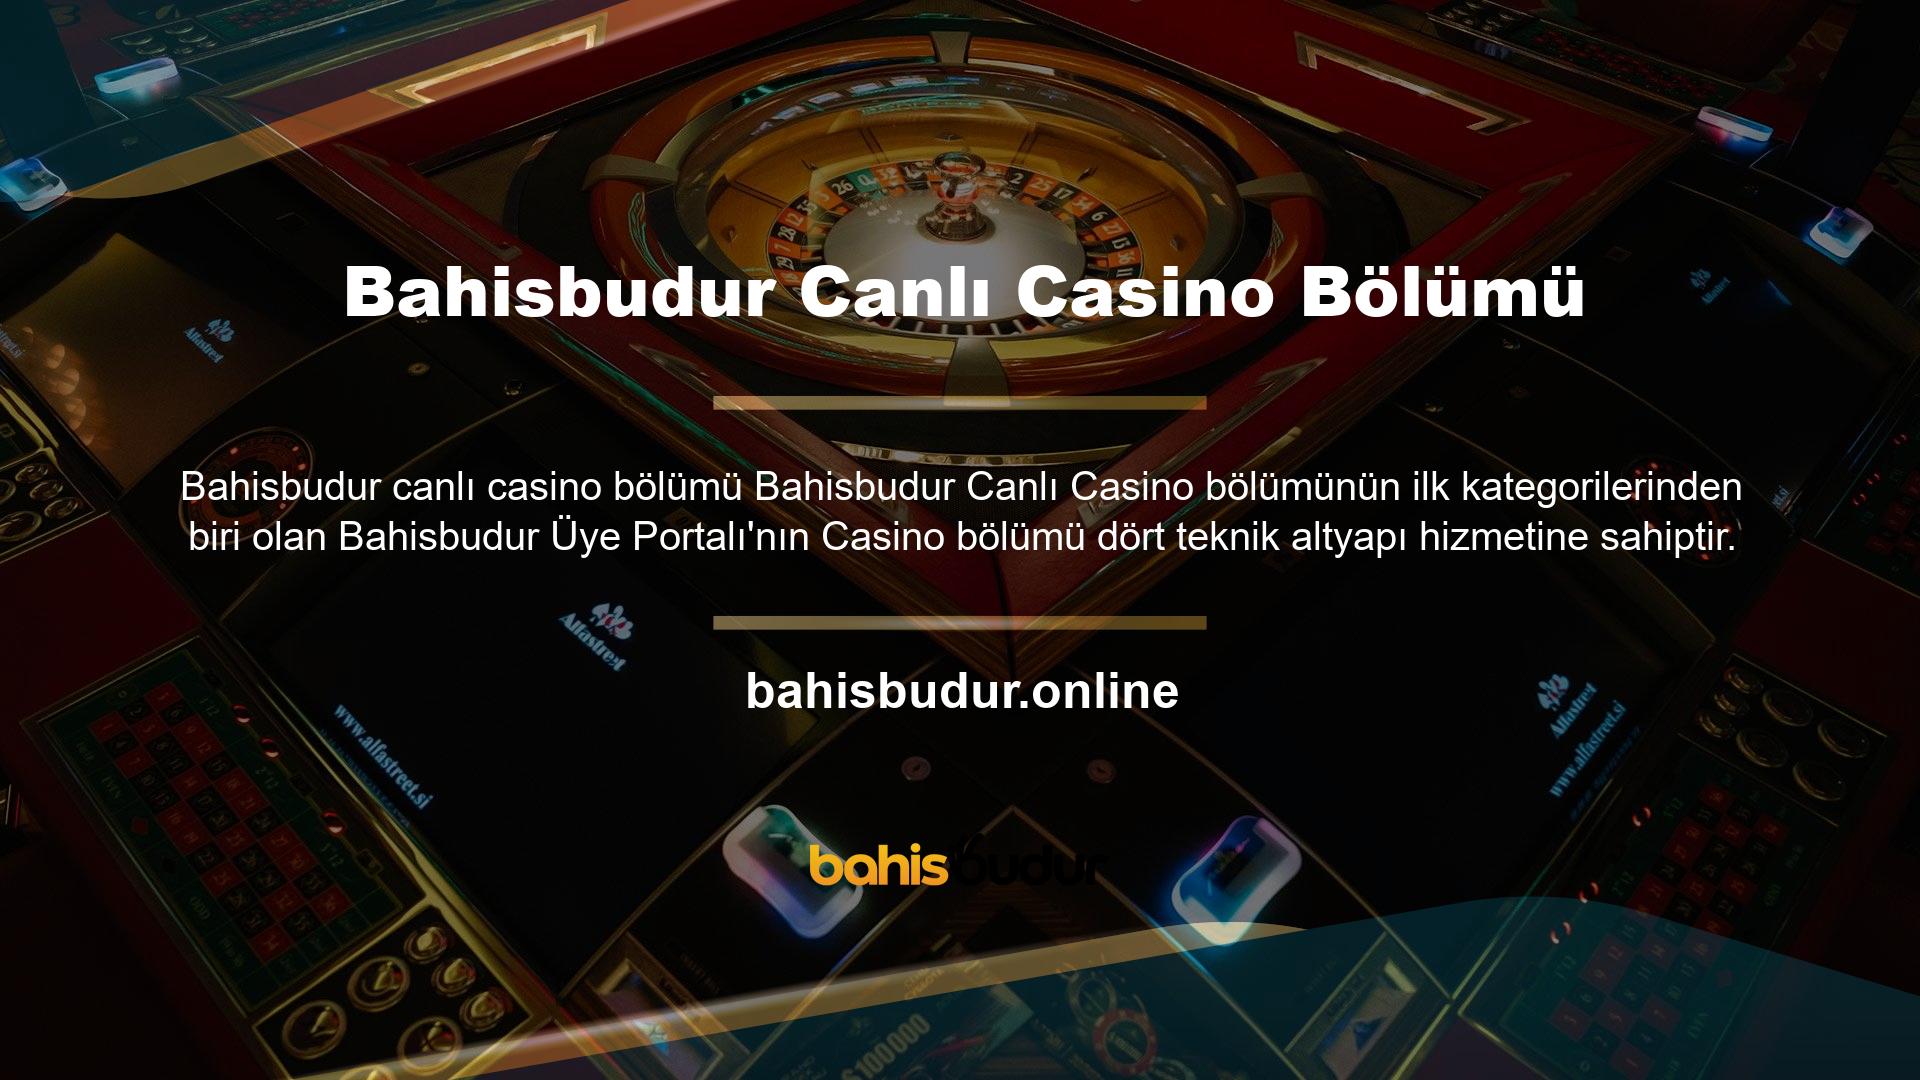 Casino bölümümüze banka havalesi yoluyla büyük miktarlarda para aktarabilir, çeşitli teknolojik altyapılarda slot oyunları oynayabilir, dilediğiniz zaman, istediğiniz yerde heyecana katılıp kazançlar kazanabilirsiniz